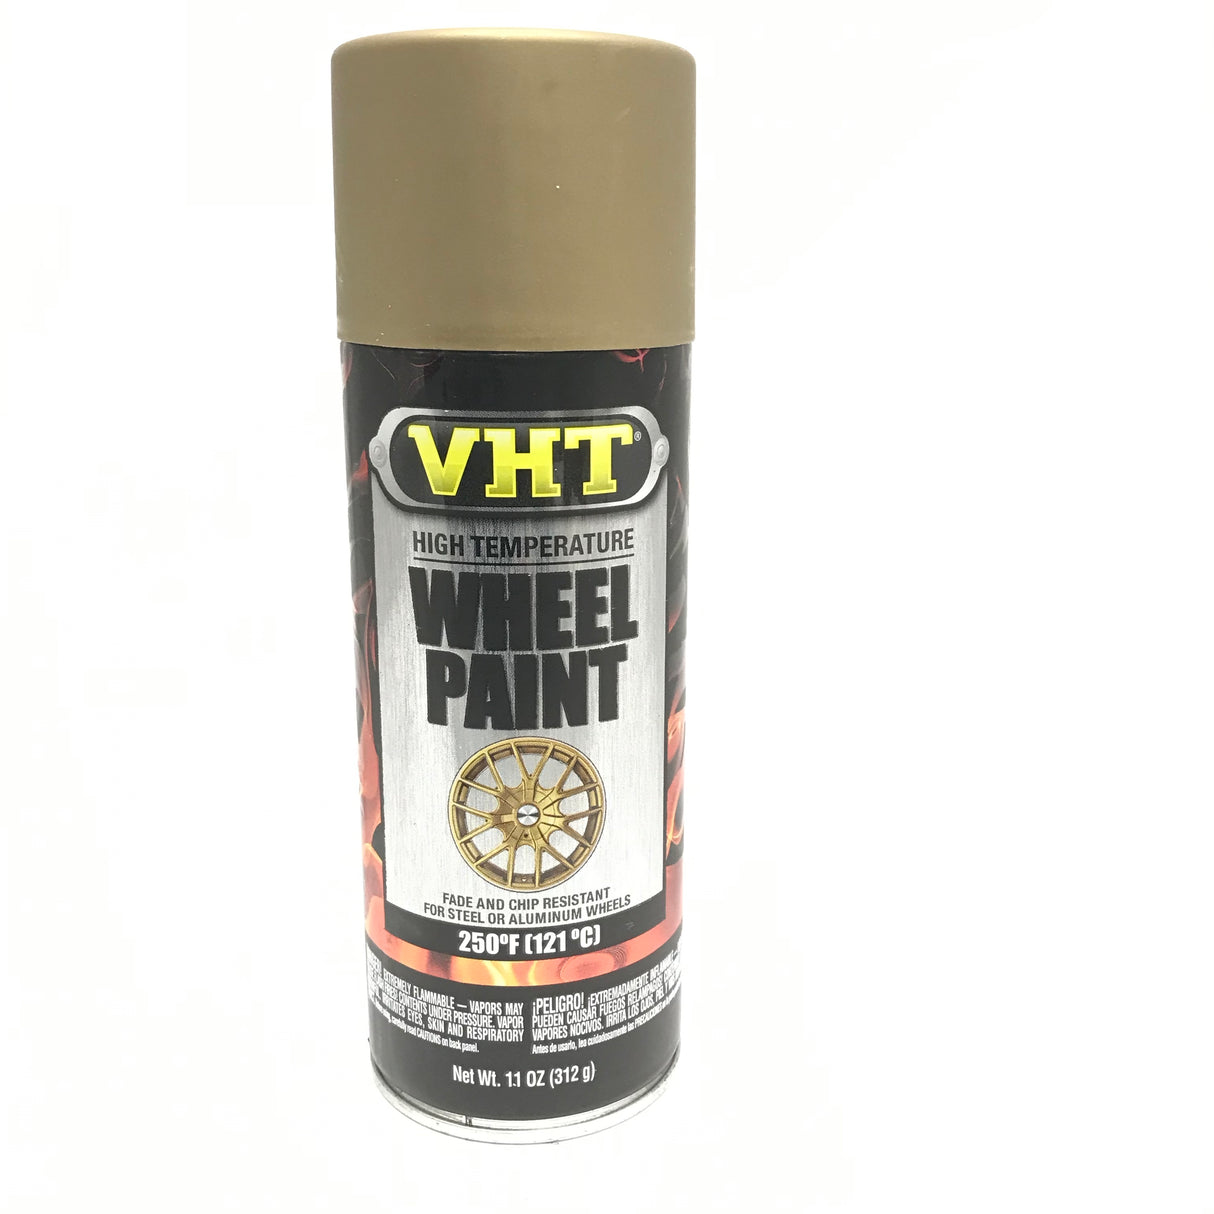 VHT SP193 High Temperature MATTE GOLD FLAKE Wheel Paint, Chip Resistant - 11 oz